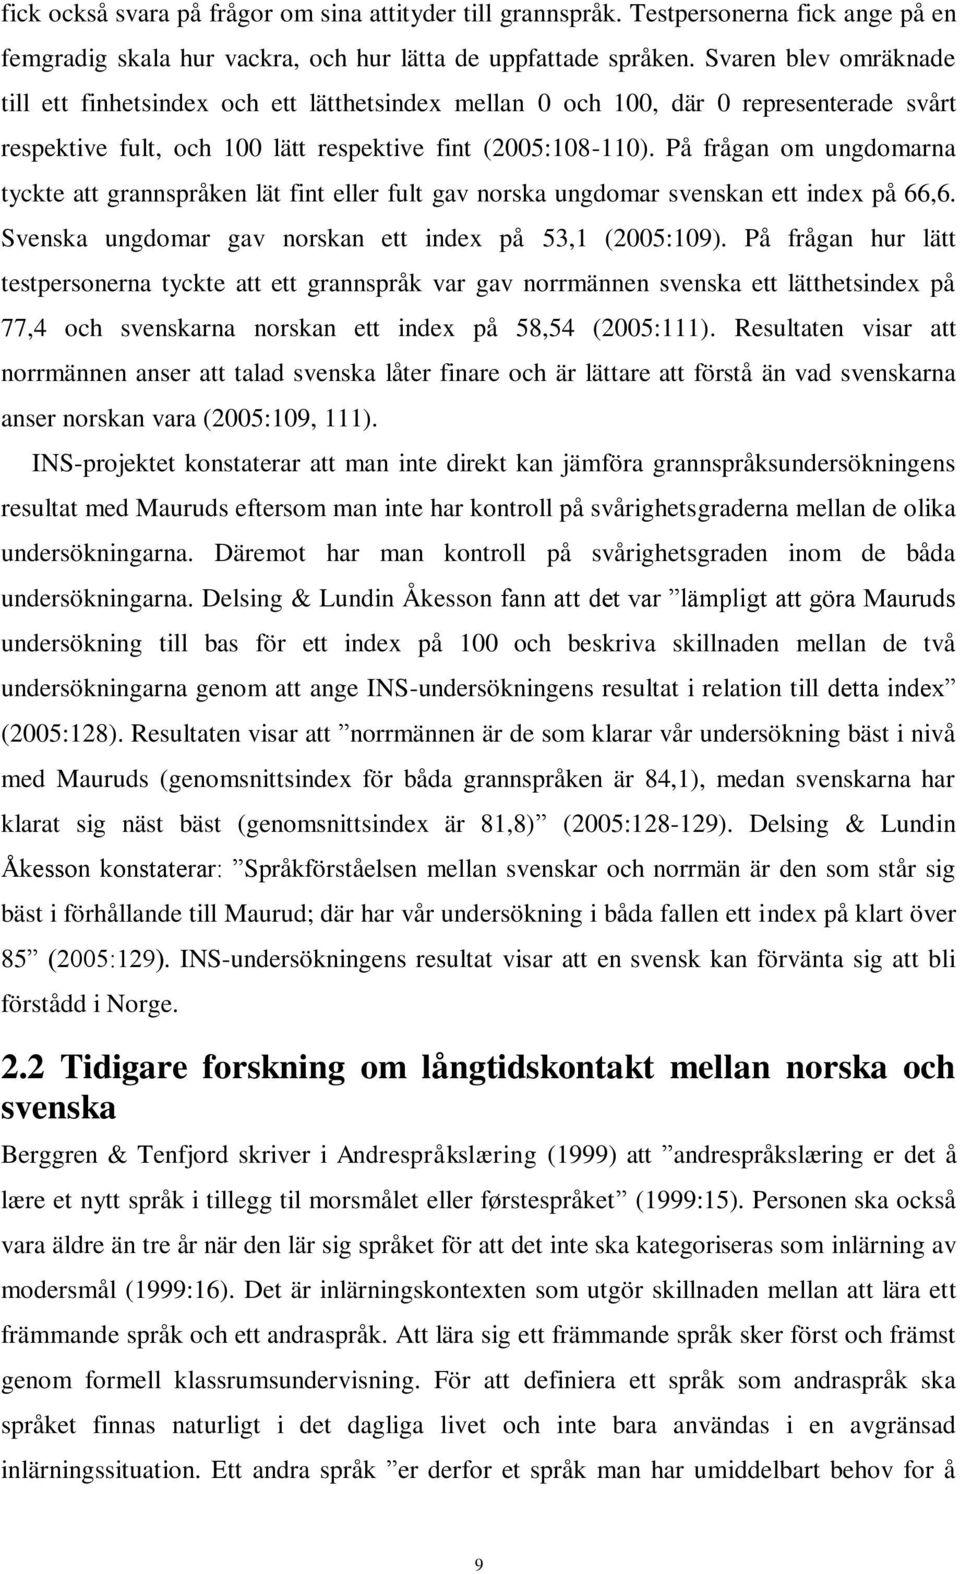 På frågan om ungdomarna tyckte att grannspråken lät fint eller fult gav norska ungdomar svenskan ett index på 66,6. Svenska ungdomar gav norskan ett index på 53,1 (2005:109).